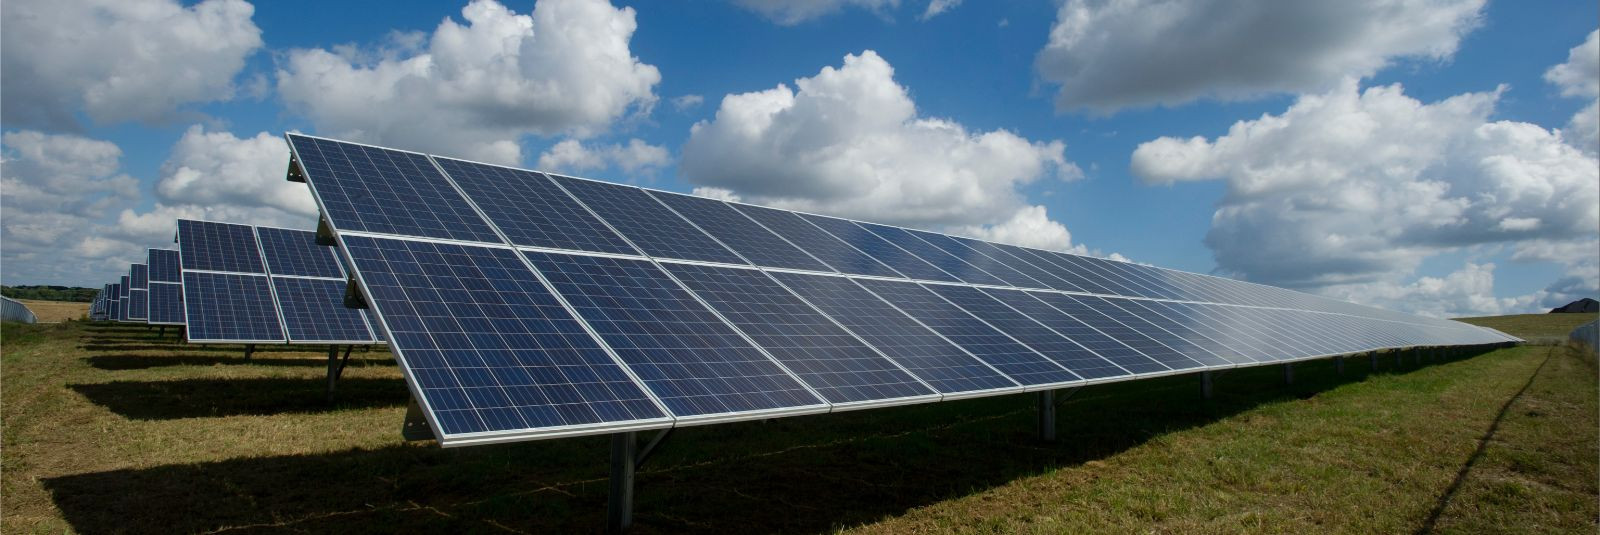 Päikeseparkidest on saanud oluline osa maailma energiarevolutsioonist, kuna üha enam inimesi ja ettevõtteid pöörduvad looduslike ja taastuvate energiaallikate p